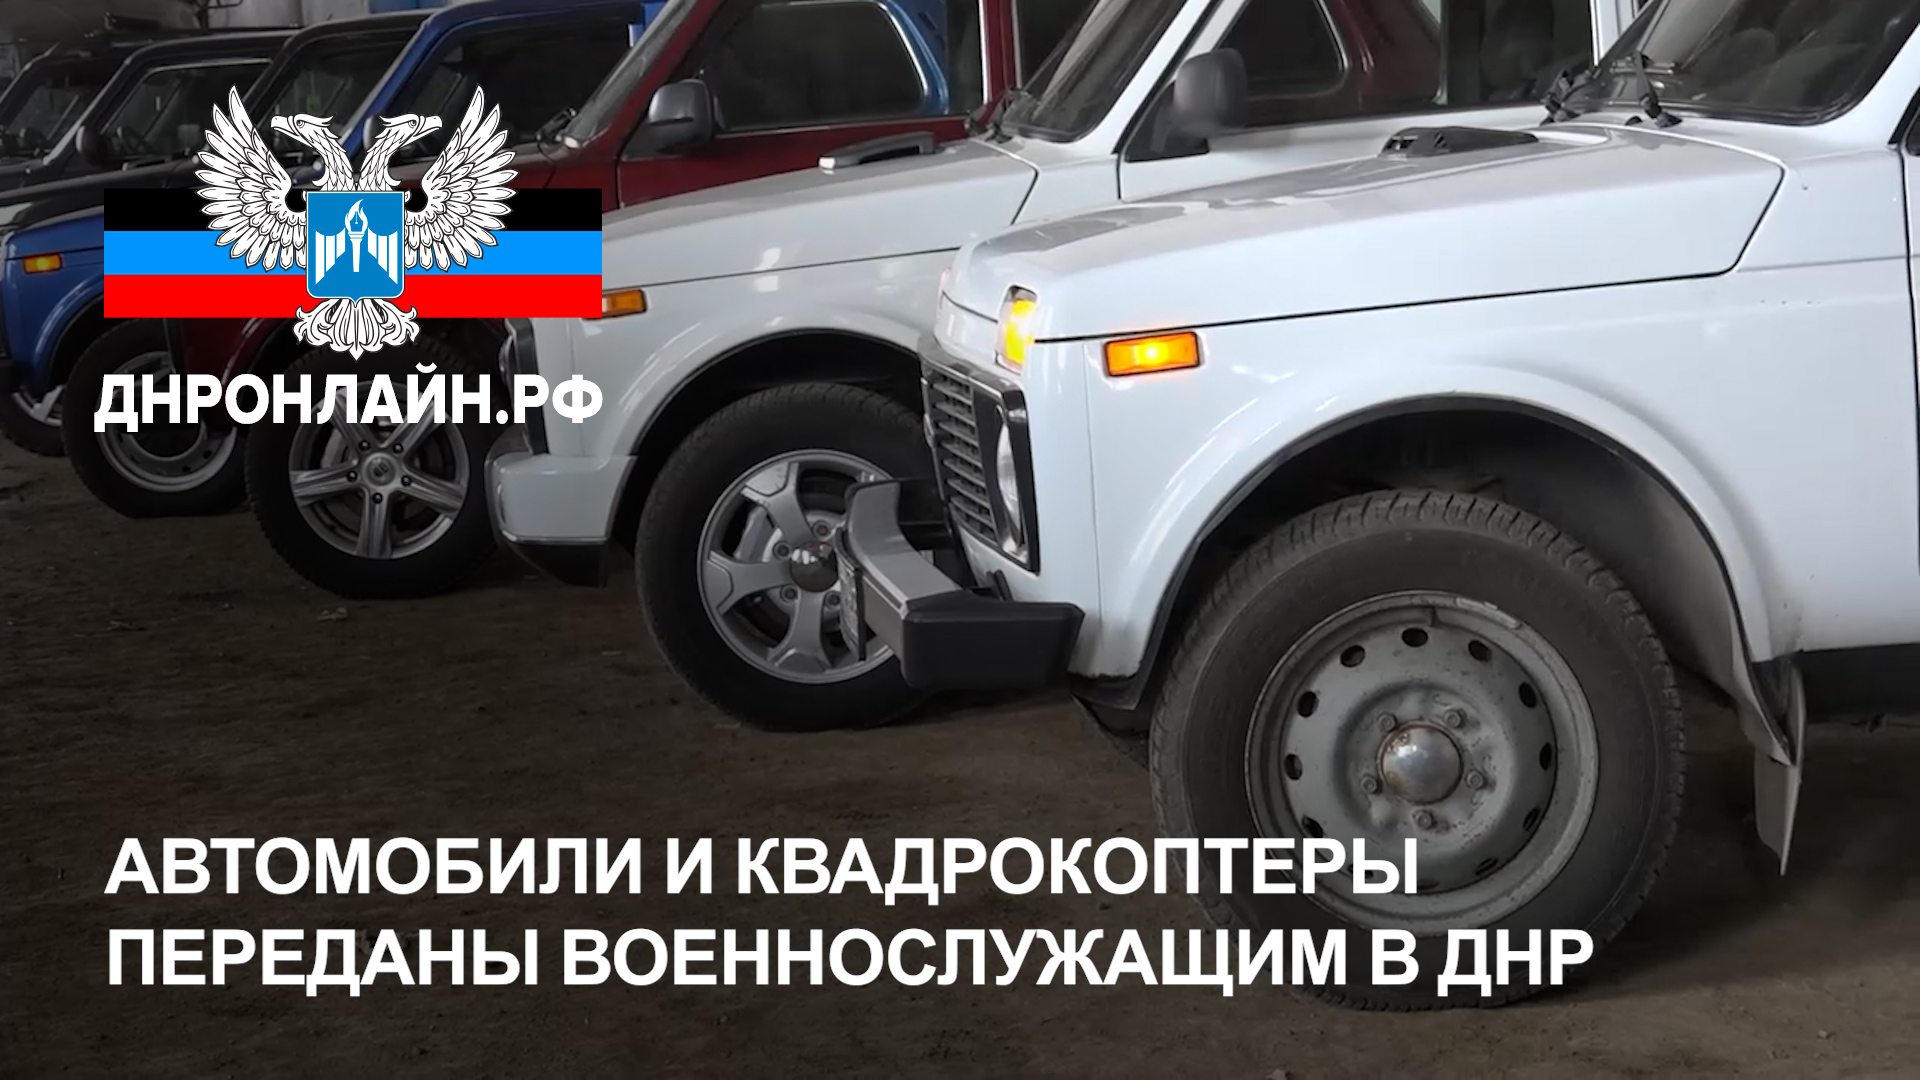 Автомобили и квадрокоптеры переданы военнослужащим в ДНР